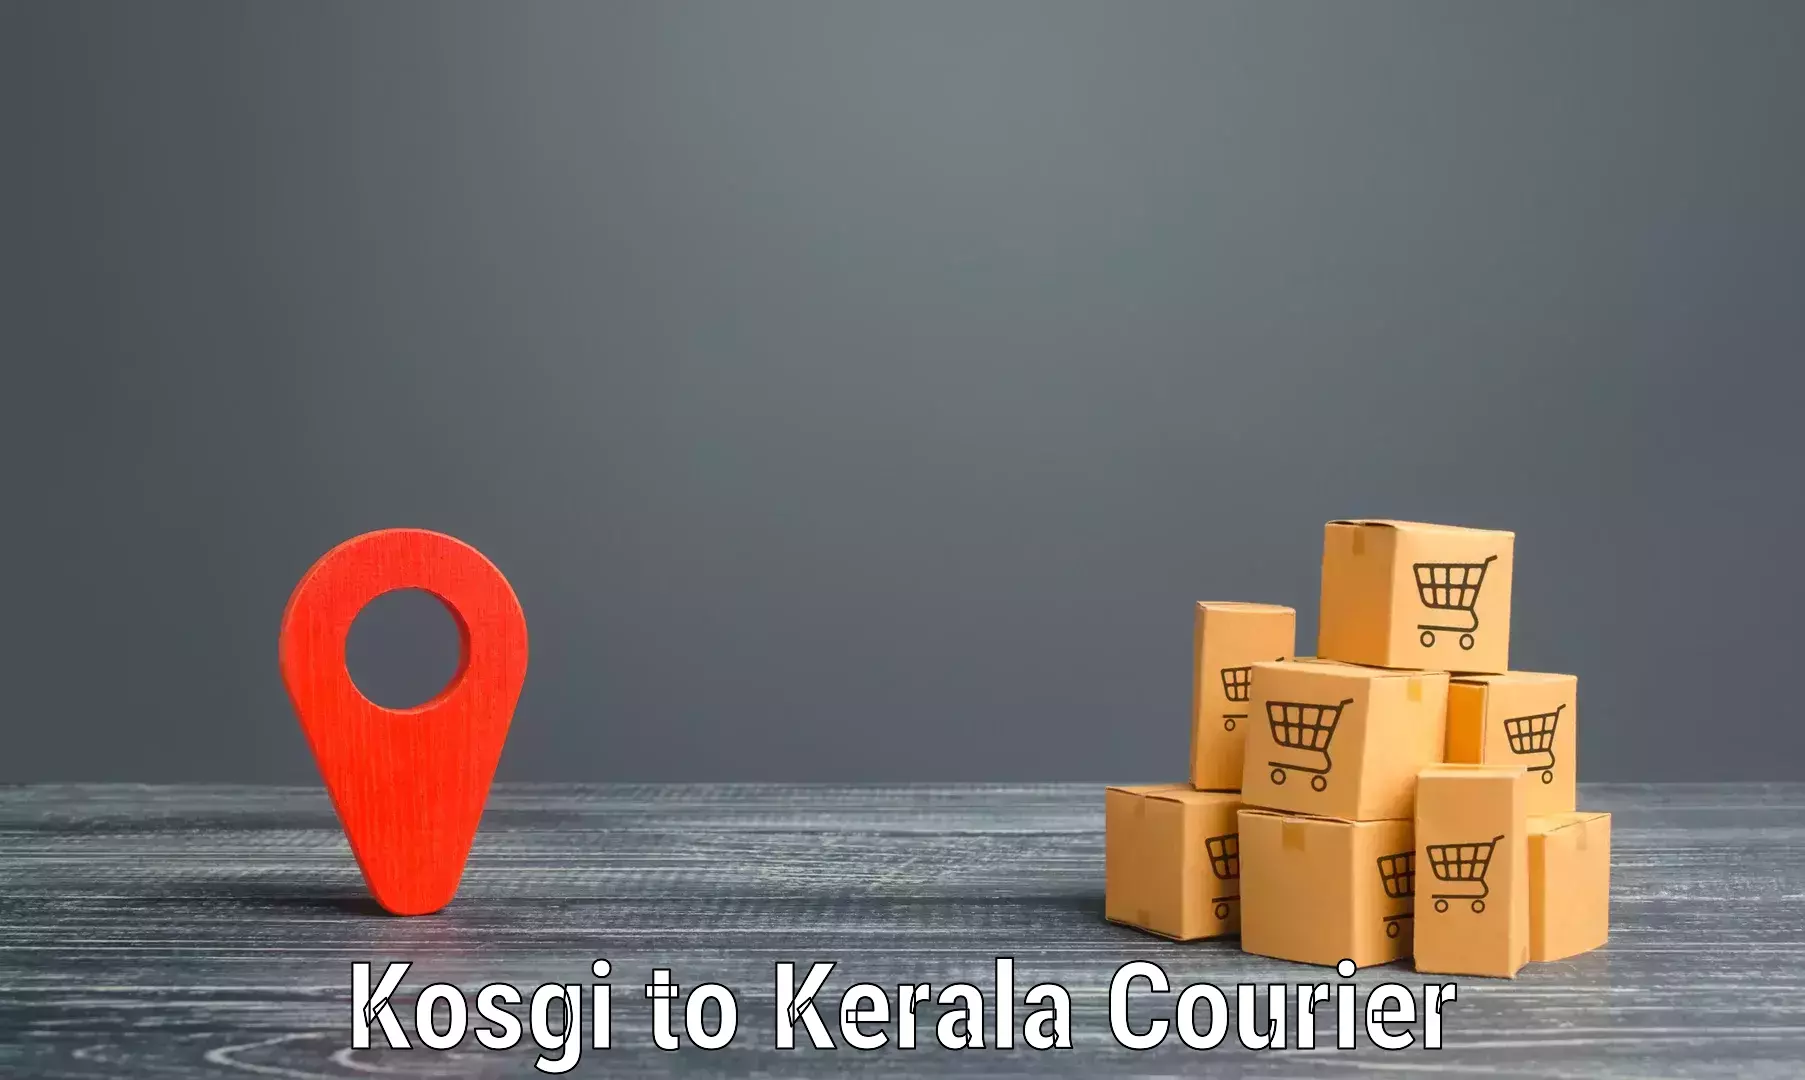 Flexible delivery schedules Kosgi to Kottarakkara